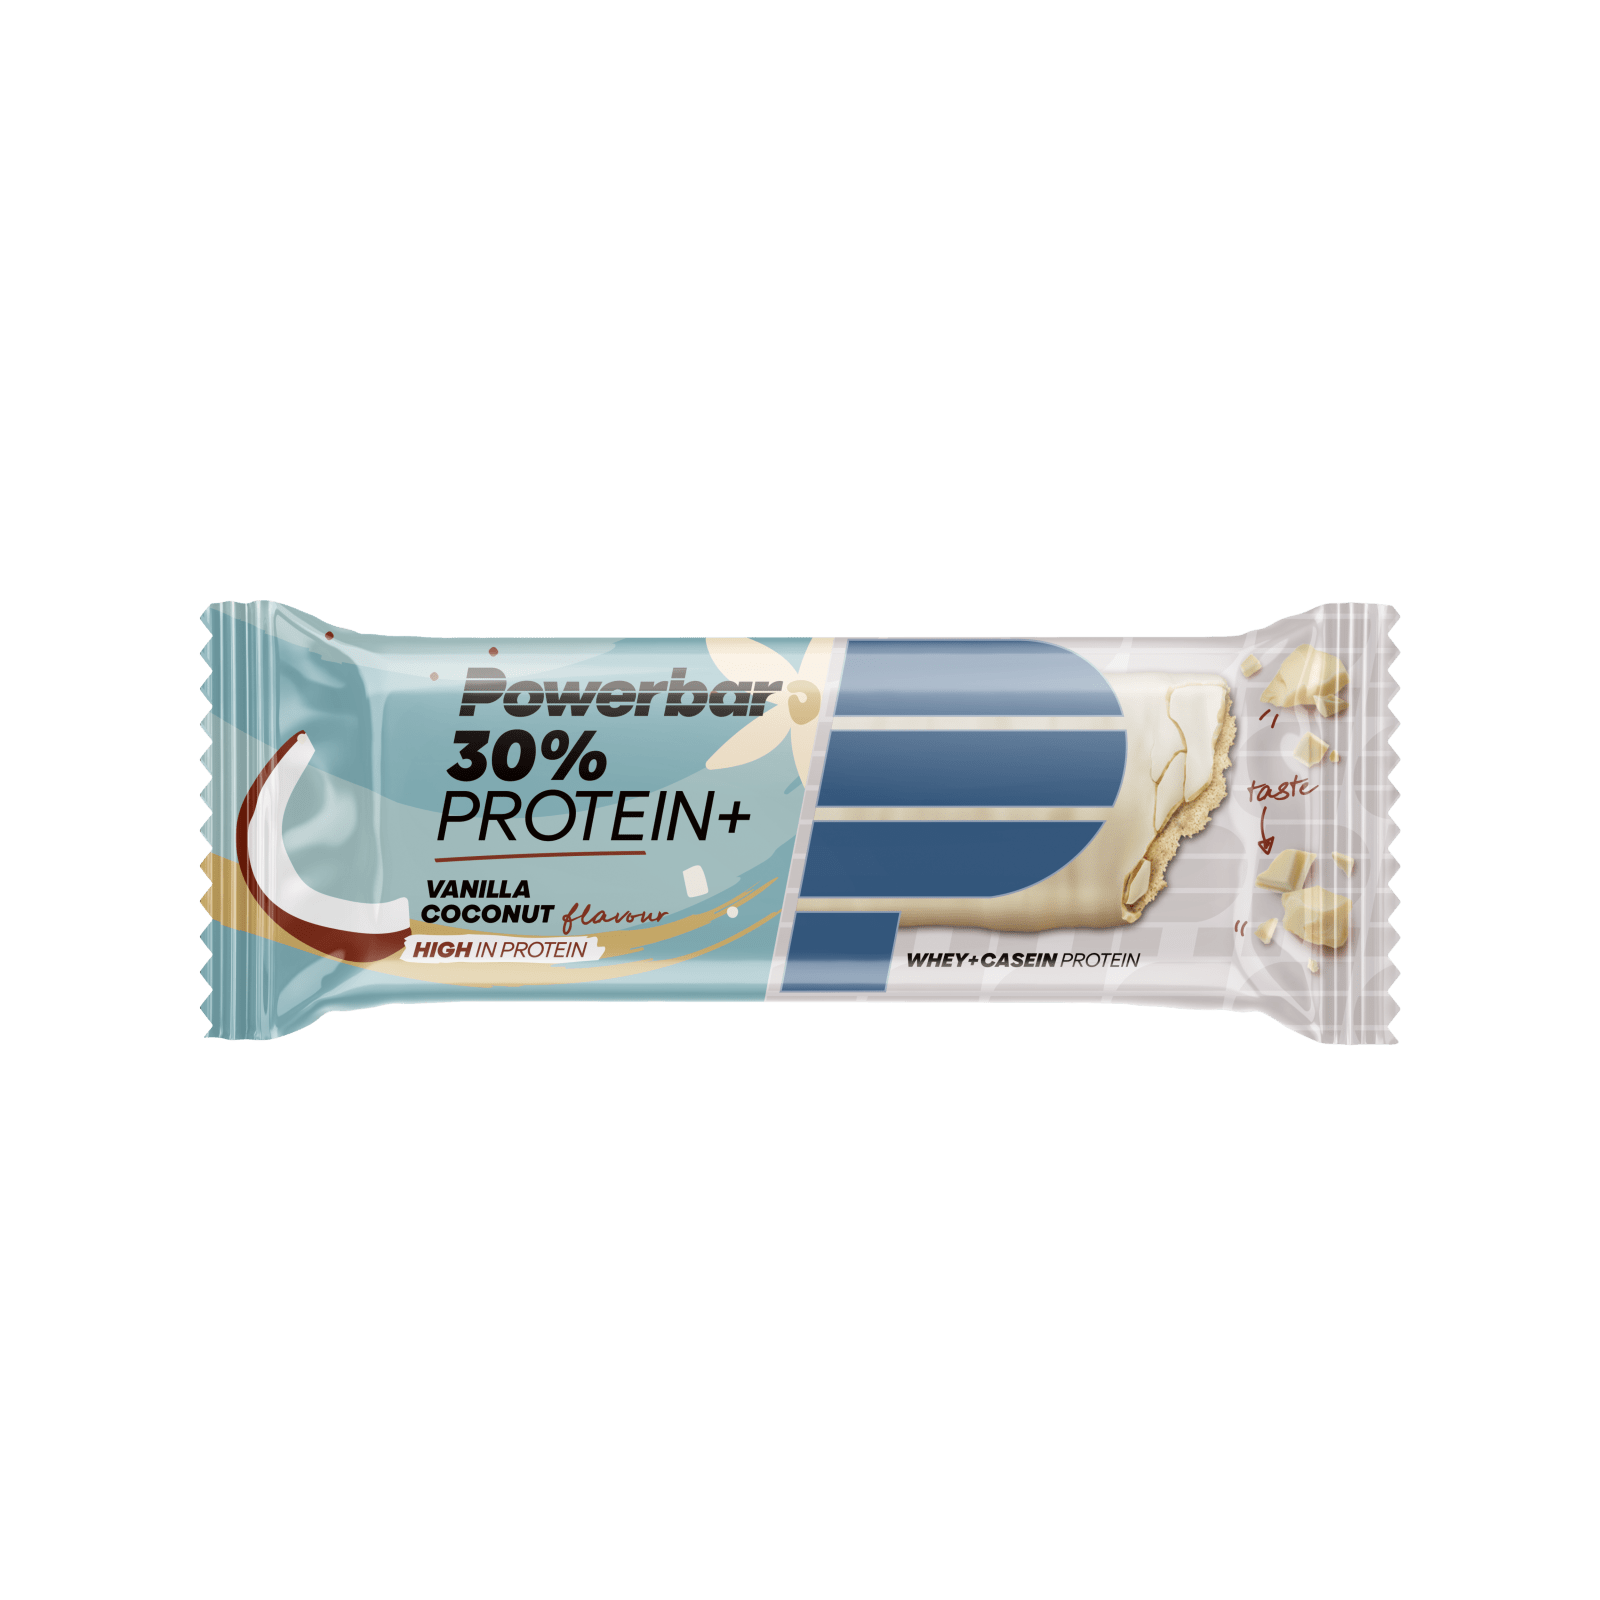 Protein Plus Bar 30% - Powerbar